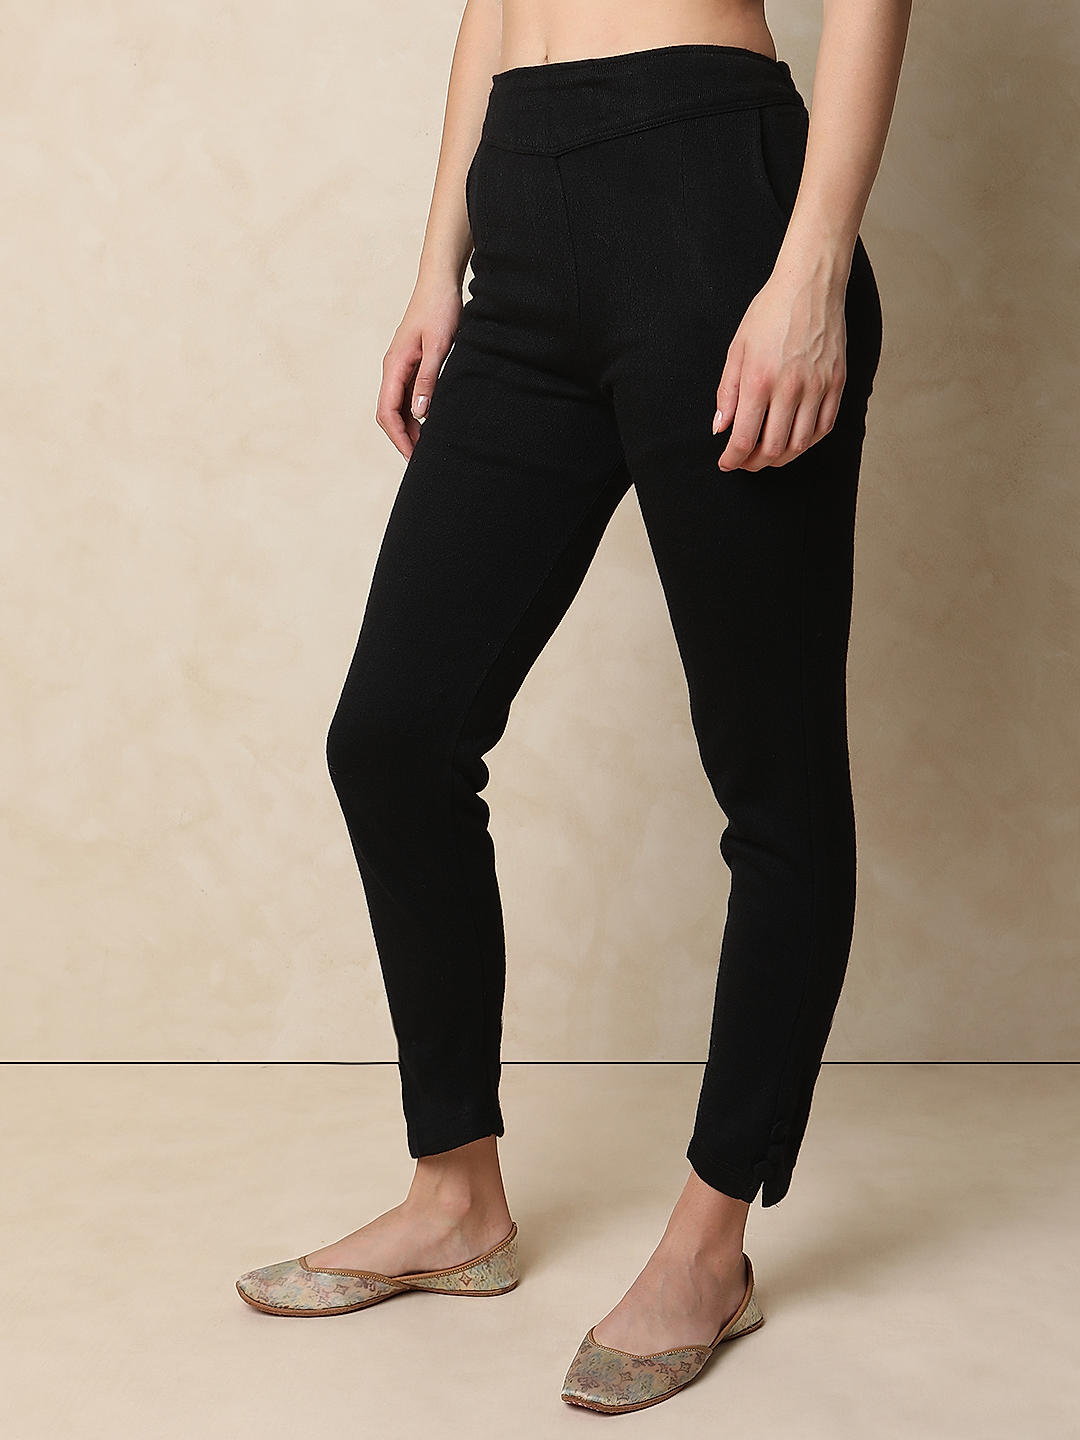 ZHCWT Pants Women Wide-Leg Pants Autumn Winter Woolen Pants Lattice Trousers  High Waist Pants Plus Size Women Culottes (Color : B, Size : XXXX-Large)  price in UAE | Amazon UAE | kanbkam